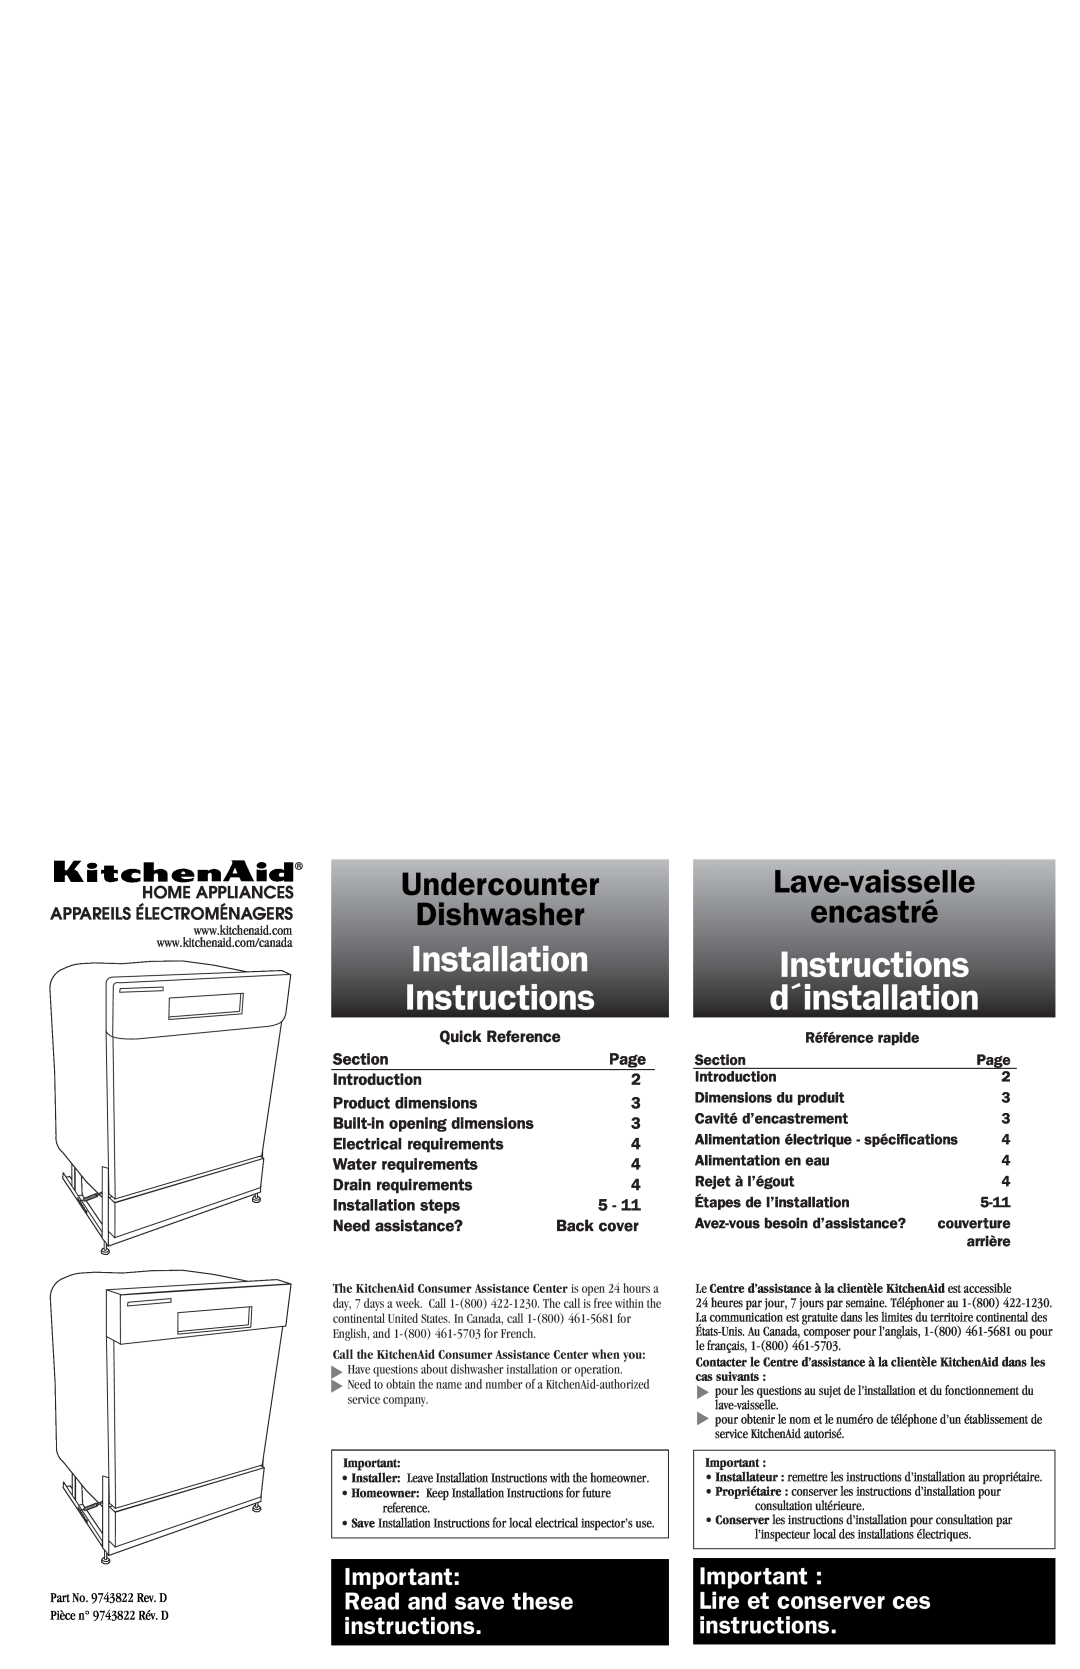 KitchenAid 9743822 dimensions Instructions d´installation, Installation, Undercounter, Dishwasher, Lave-vaisselle encastré 